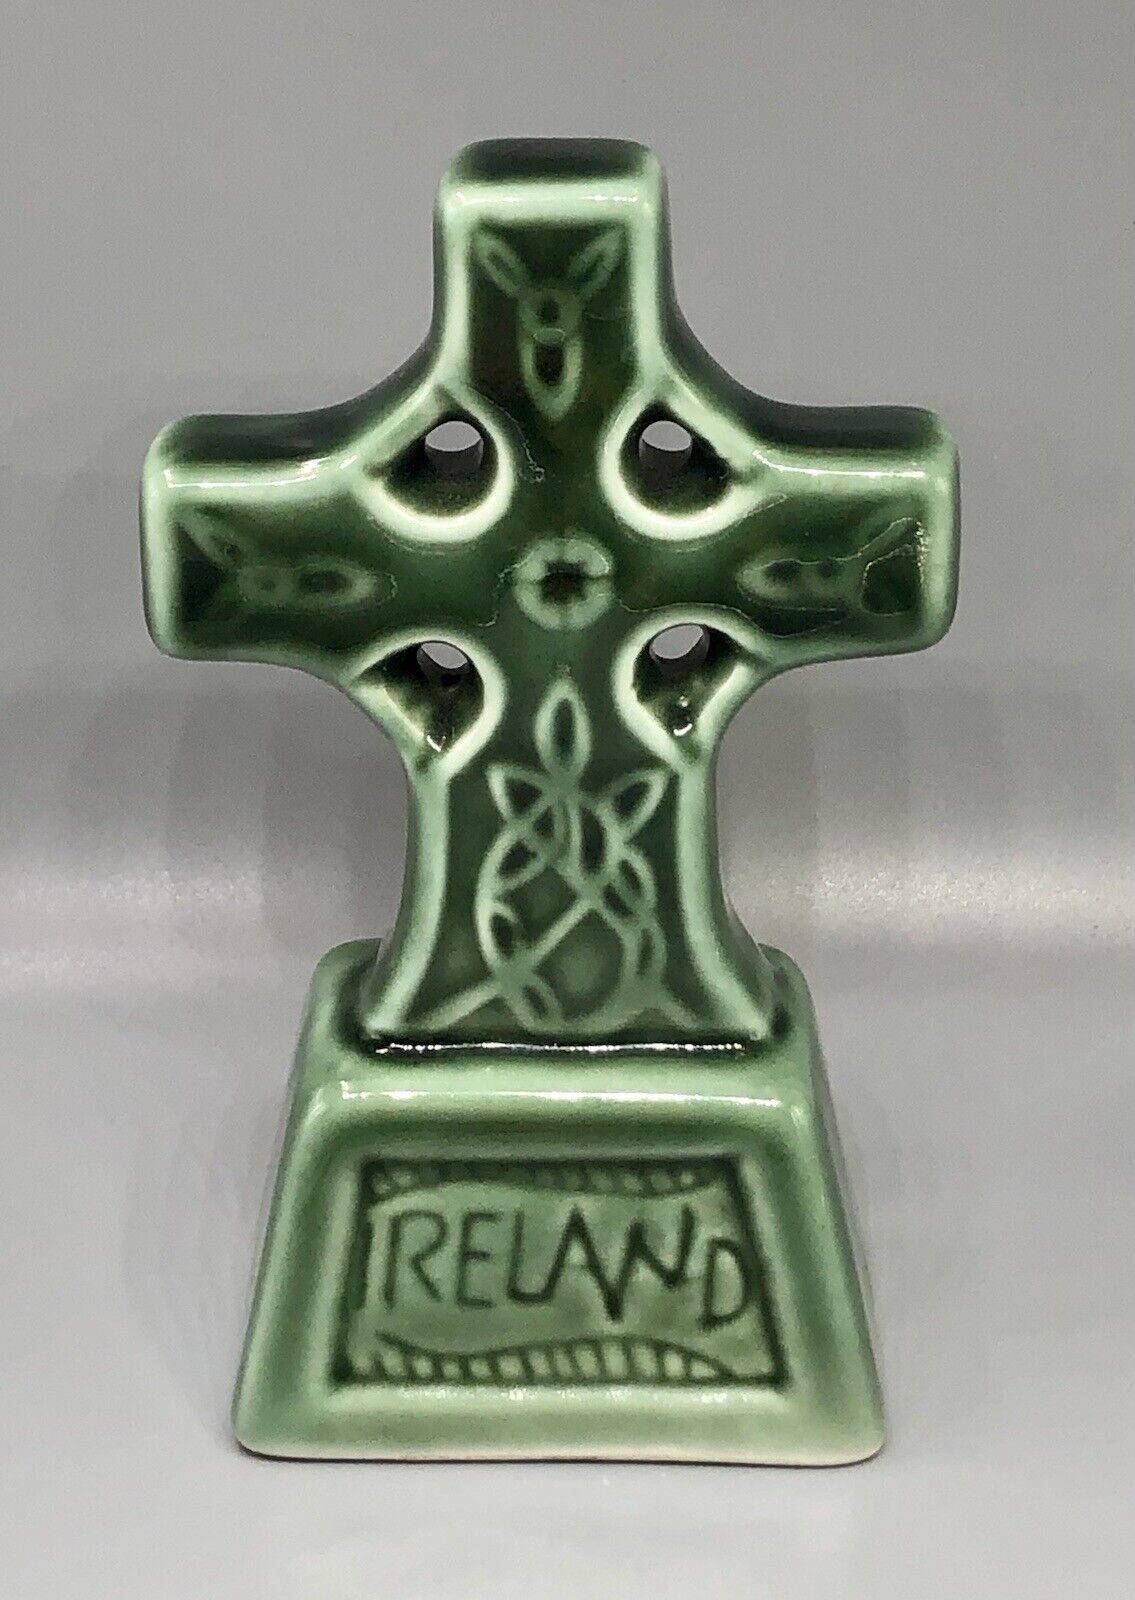 Vintage Ireland Green Glaze Porcelain Celtic Cross Figurine - 5” (H)